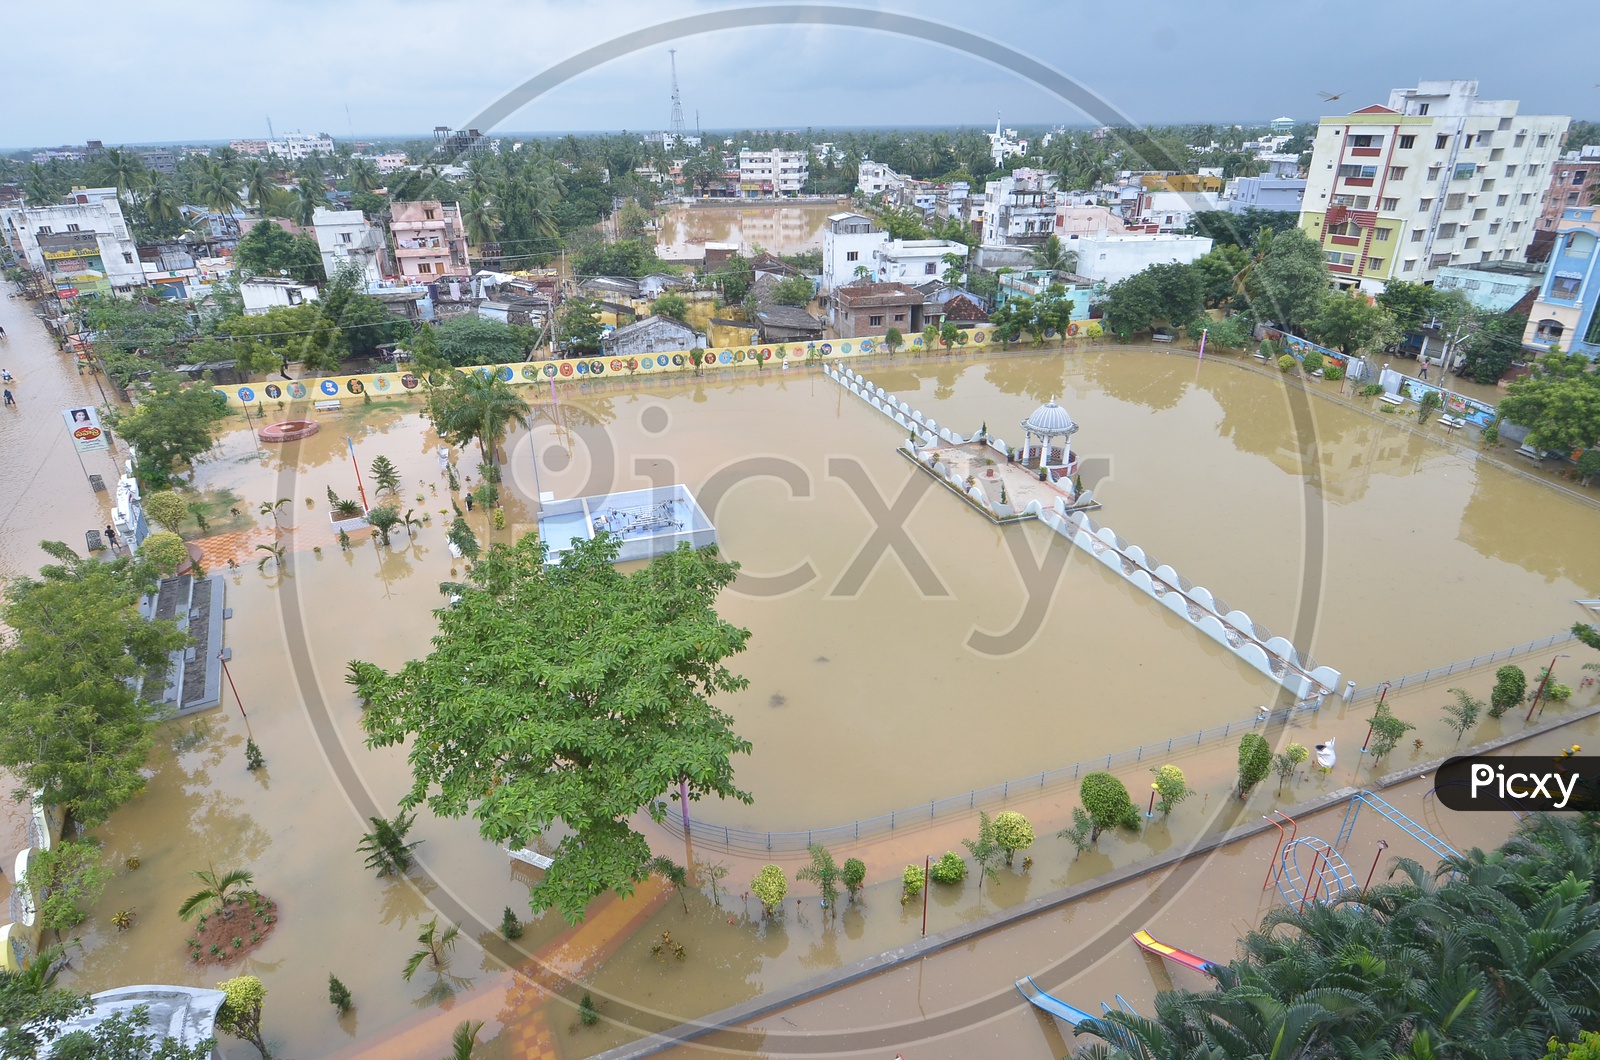 Aerial view of Eluru during floods